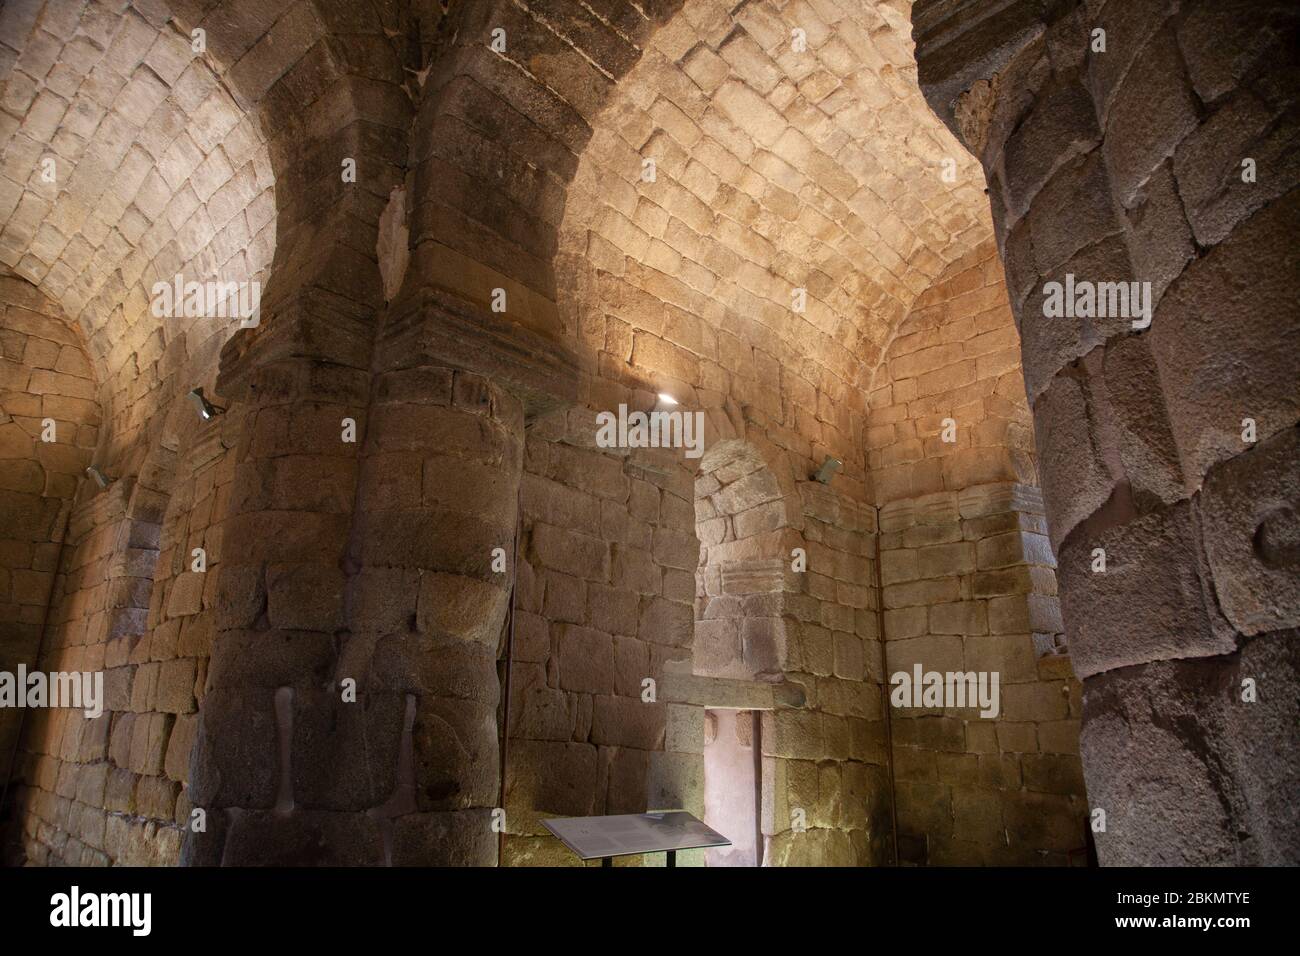 Interior of the Visigothic church of Santa Maria de Melque, Toledo Stock Photo